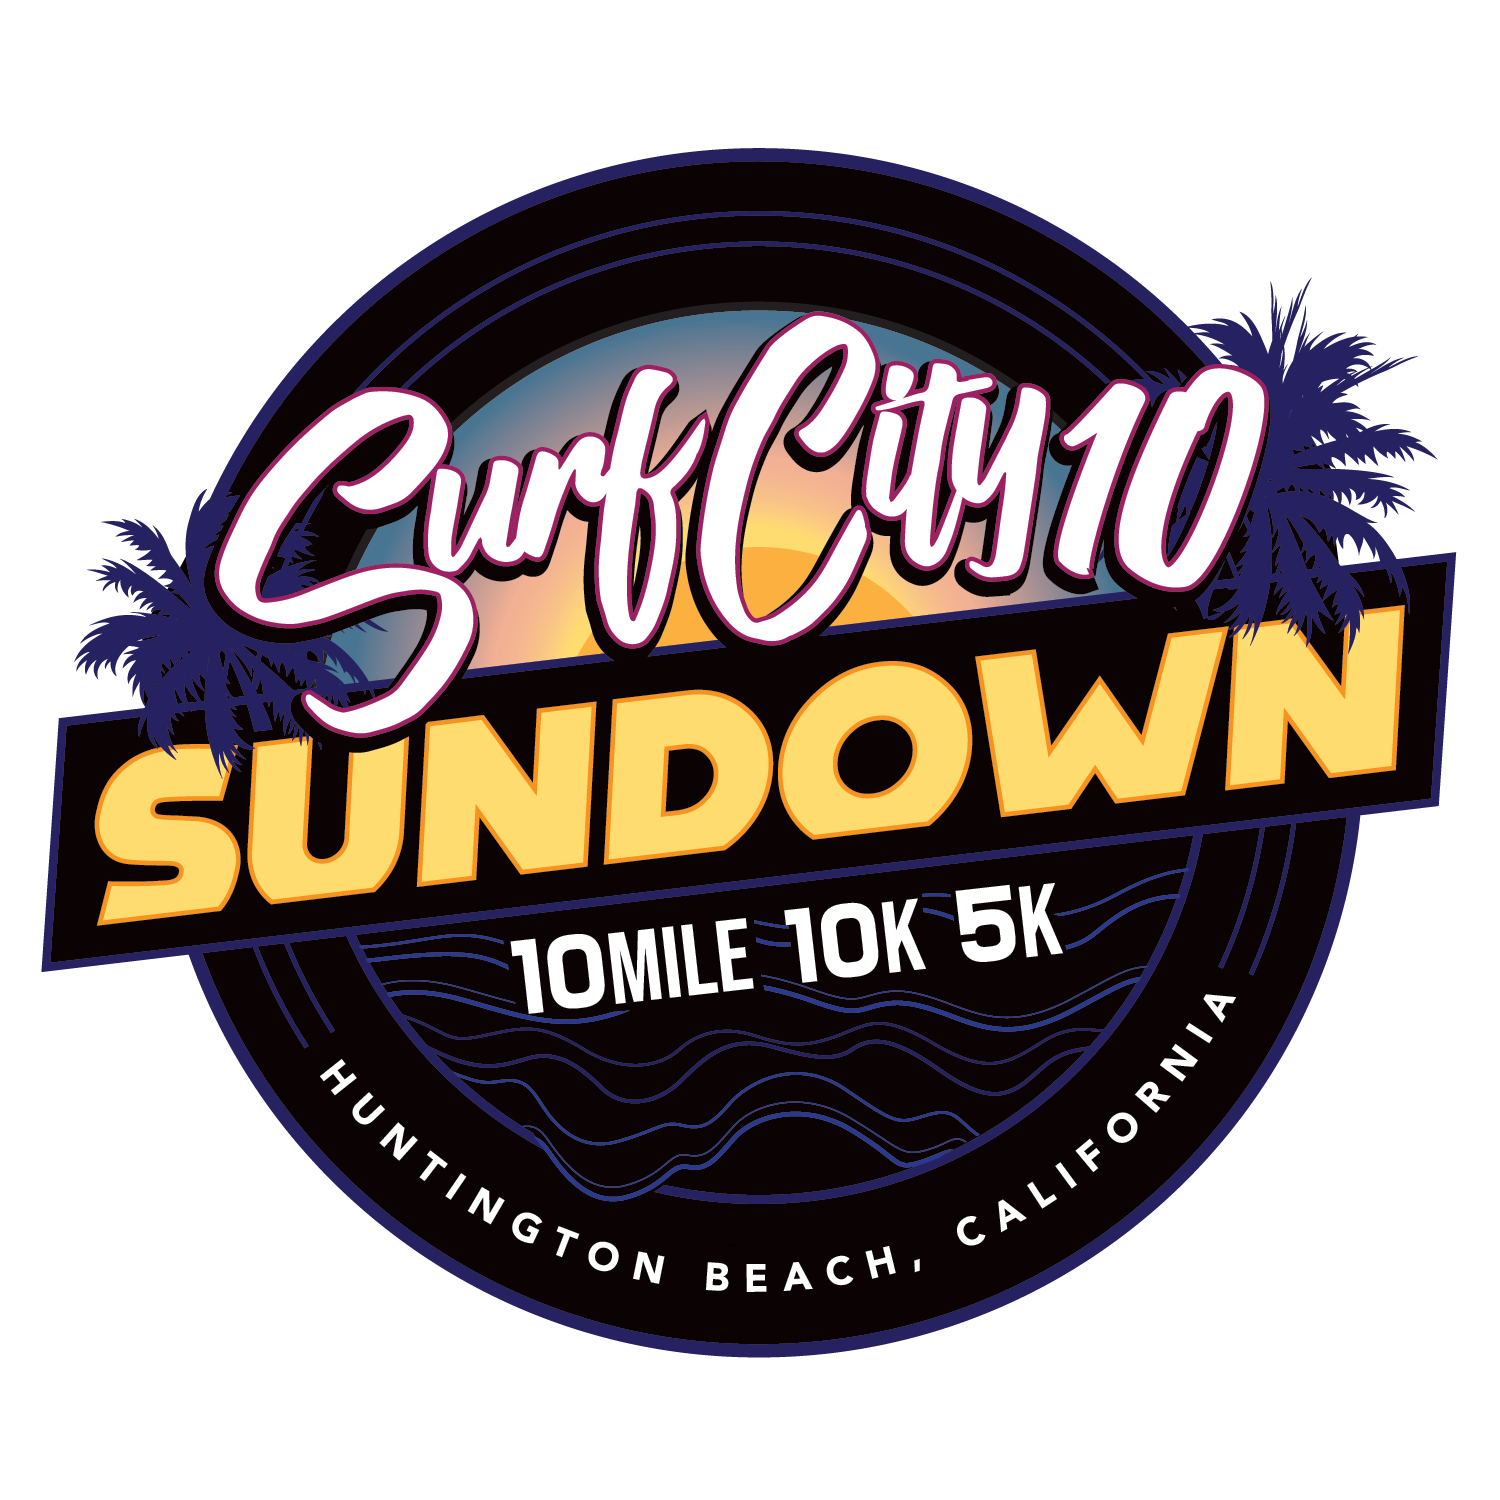 Surf City 10 Sundown logo on RaceRaves